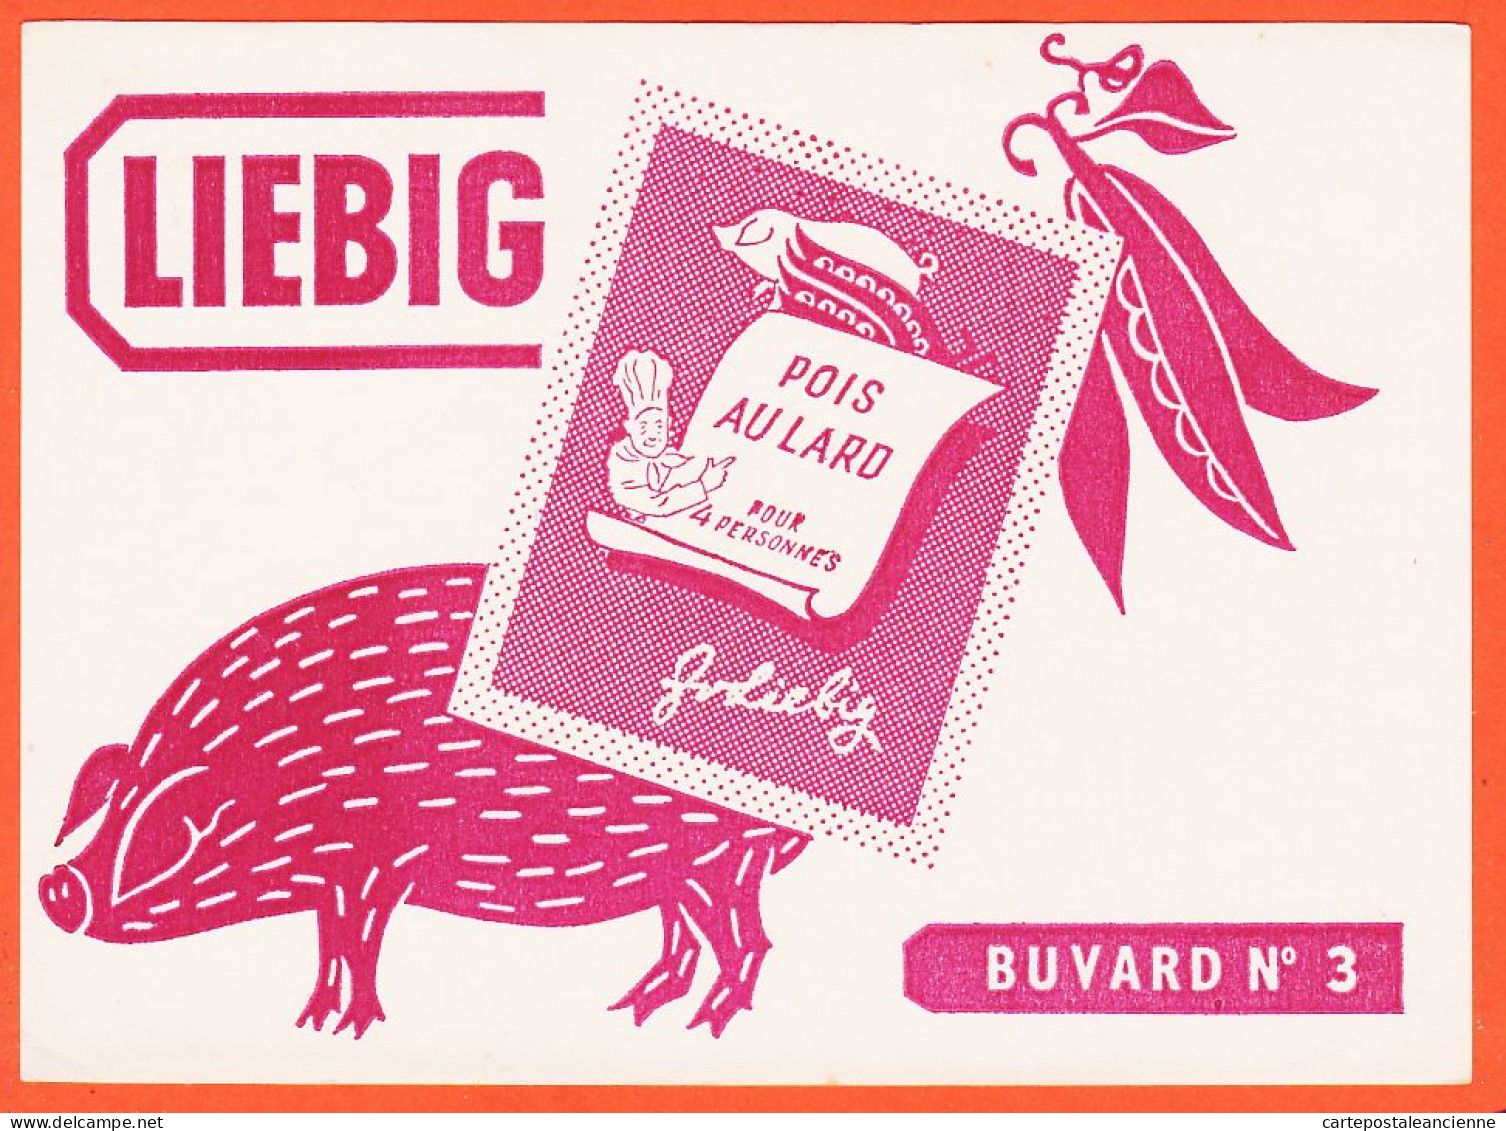 06235 / LIEBIG Cochon Pois Au Lard  Buvard N° 3 Blotter - Potages & Sauces